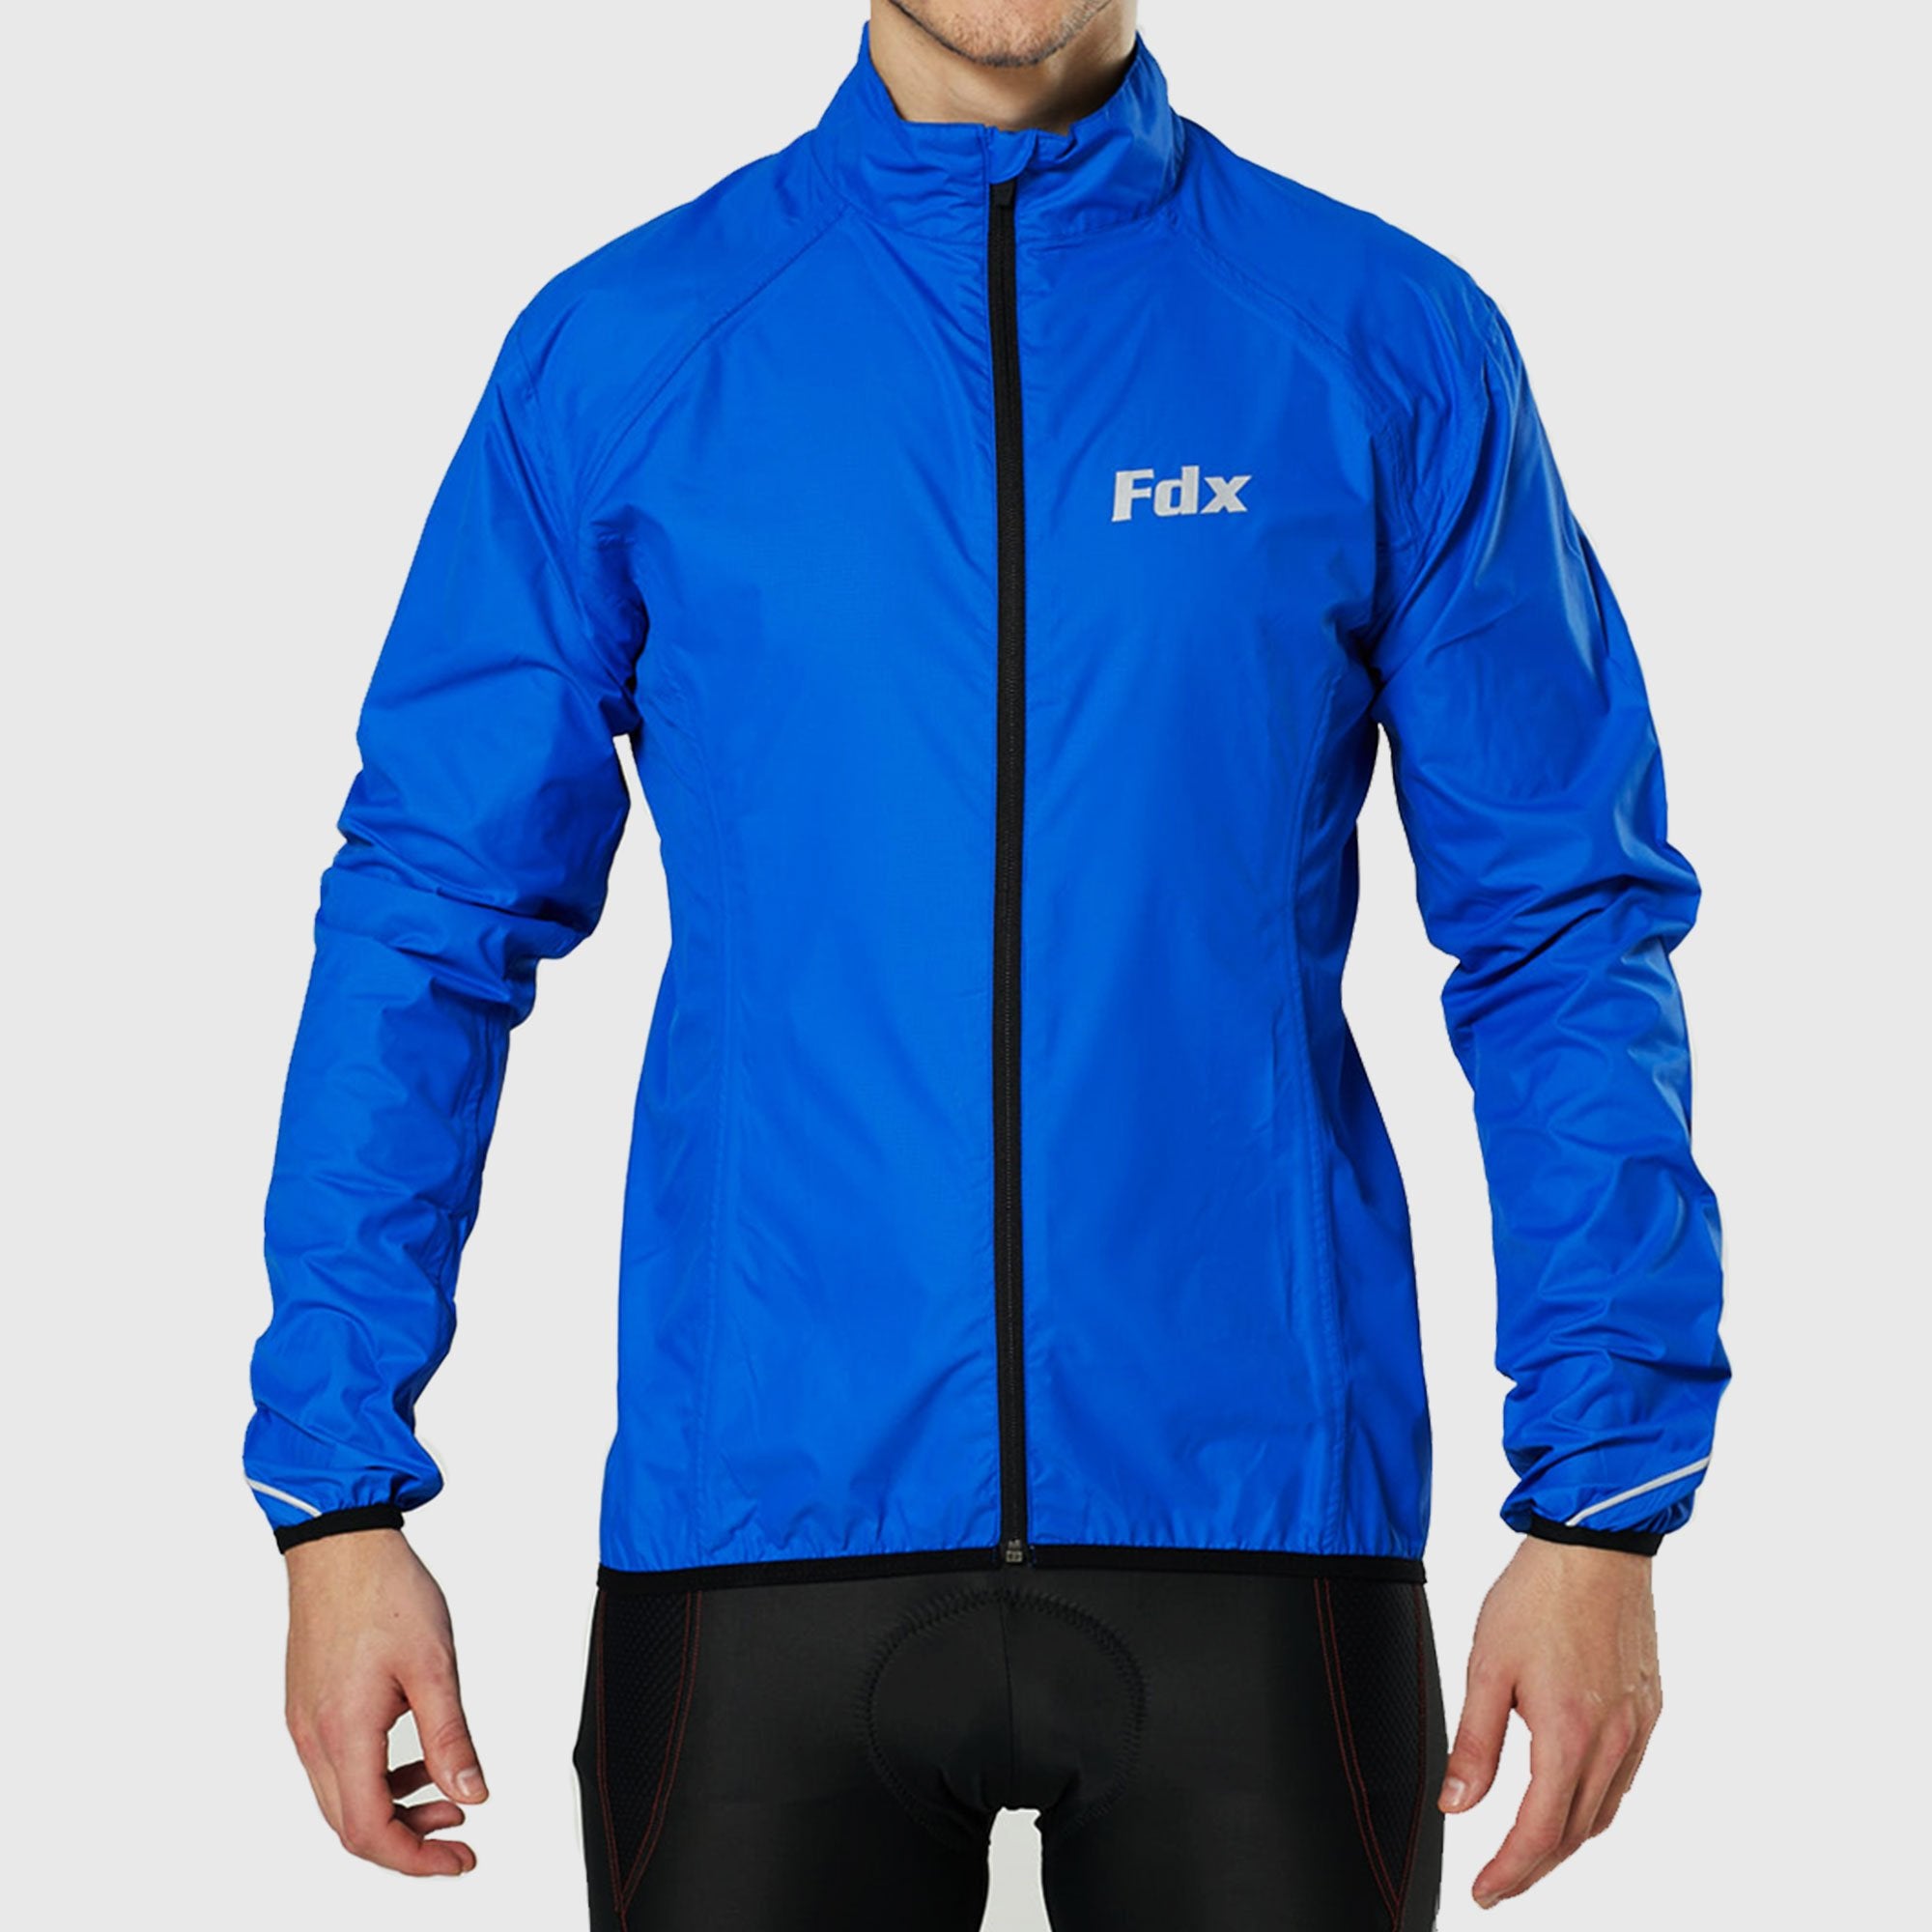 Fdx J20 Blue Windproof & Waterproof Men's Cycling Jacket